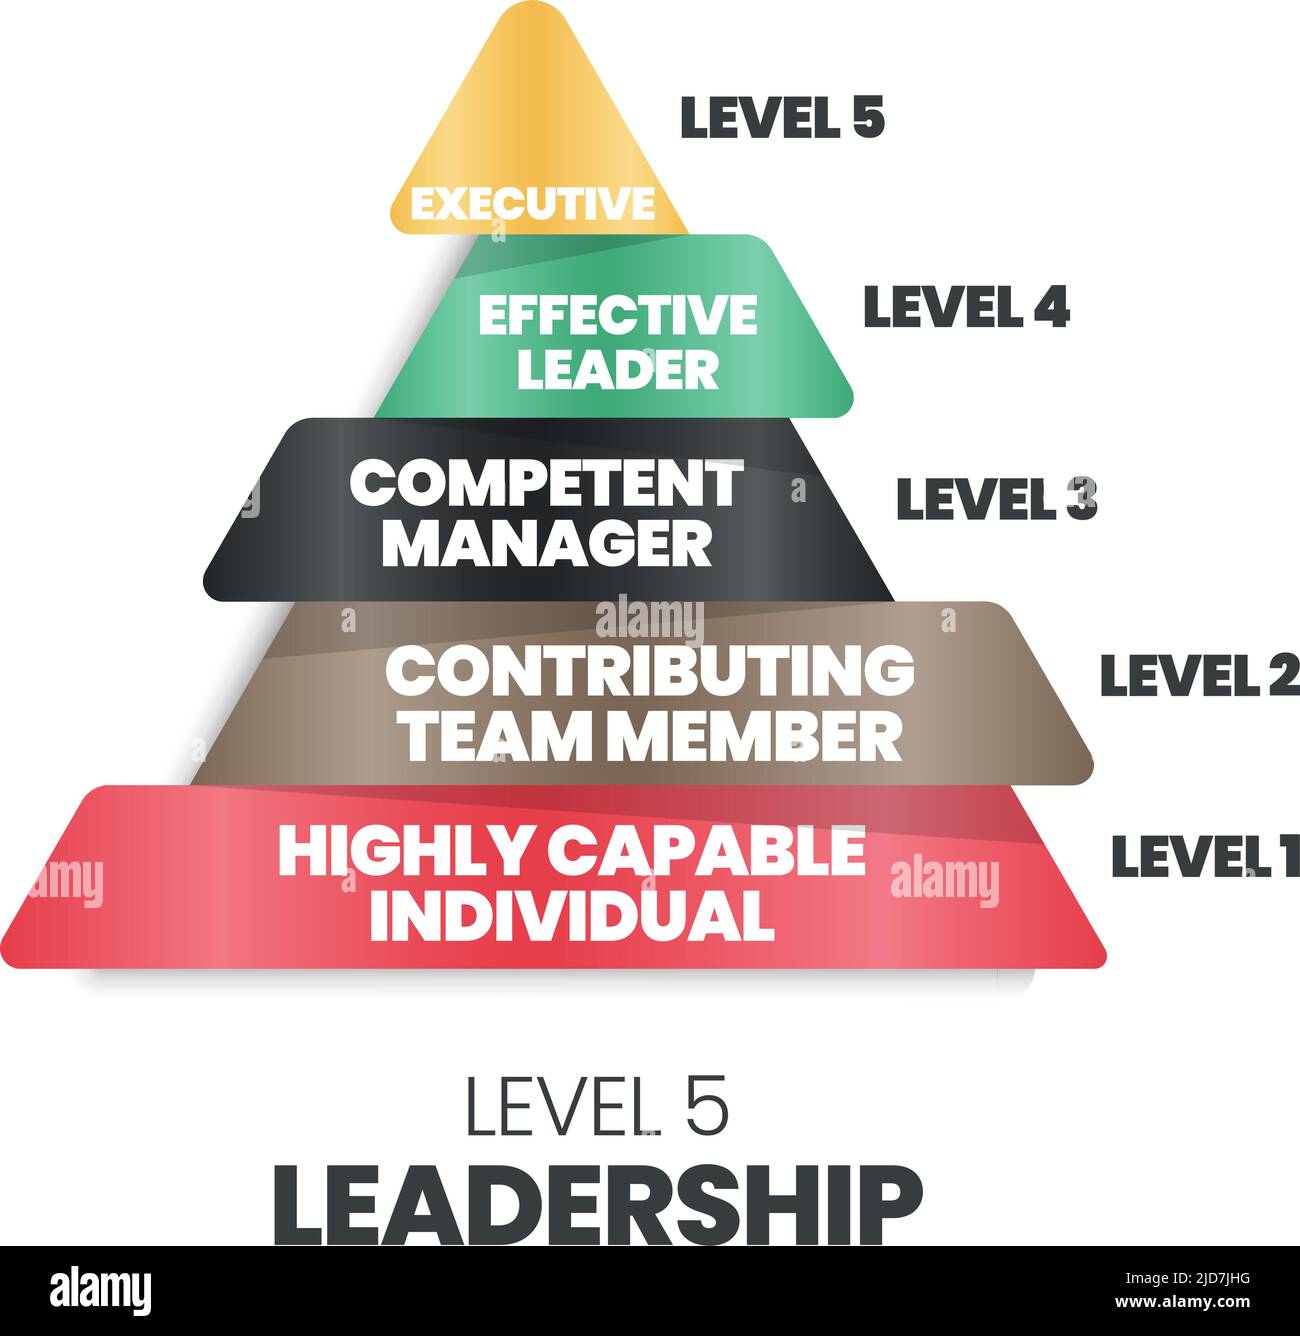 Il vettore dei 5 livelli del vettore piramide leadership inizia con un individuo altamente capace, collaboratore membro del team, responsabile delle competenze, ef Illustrazione Vettoriale